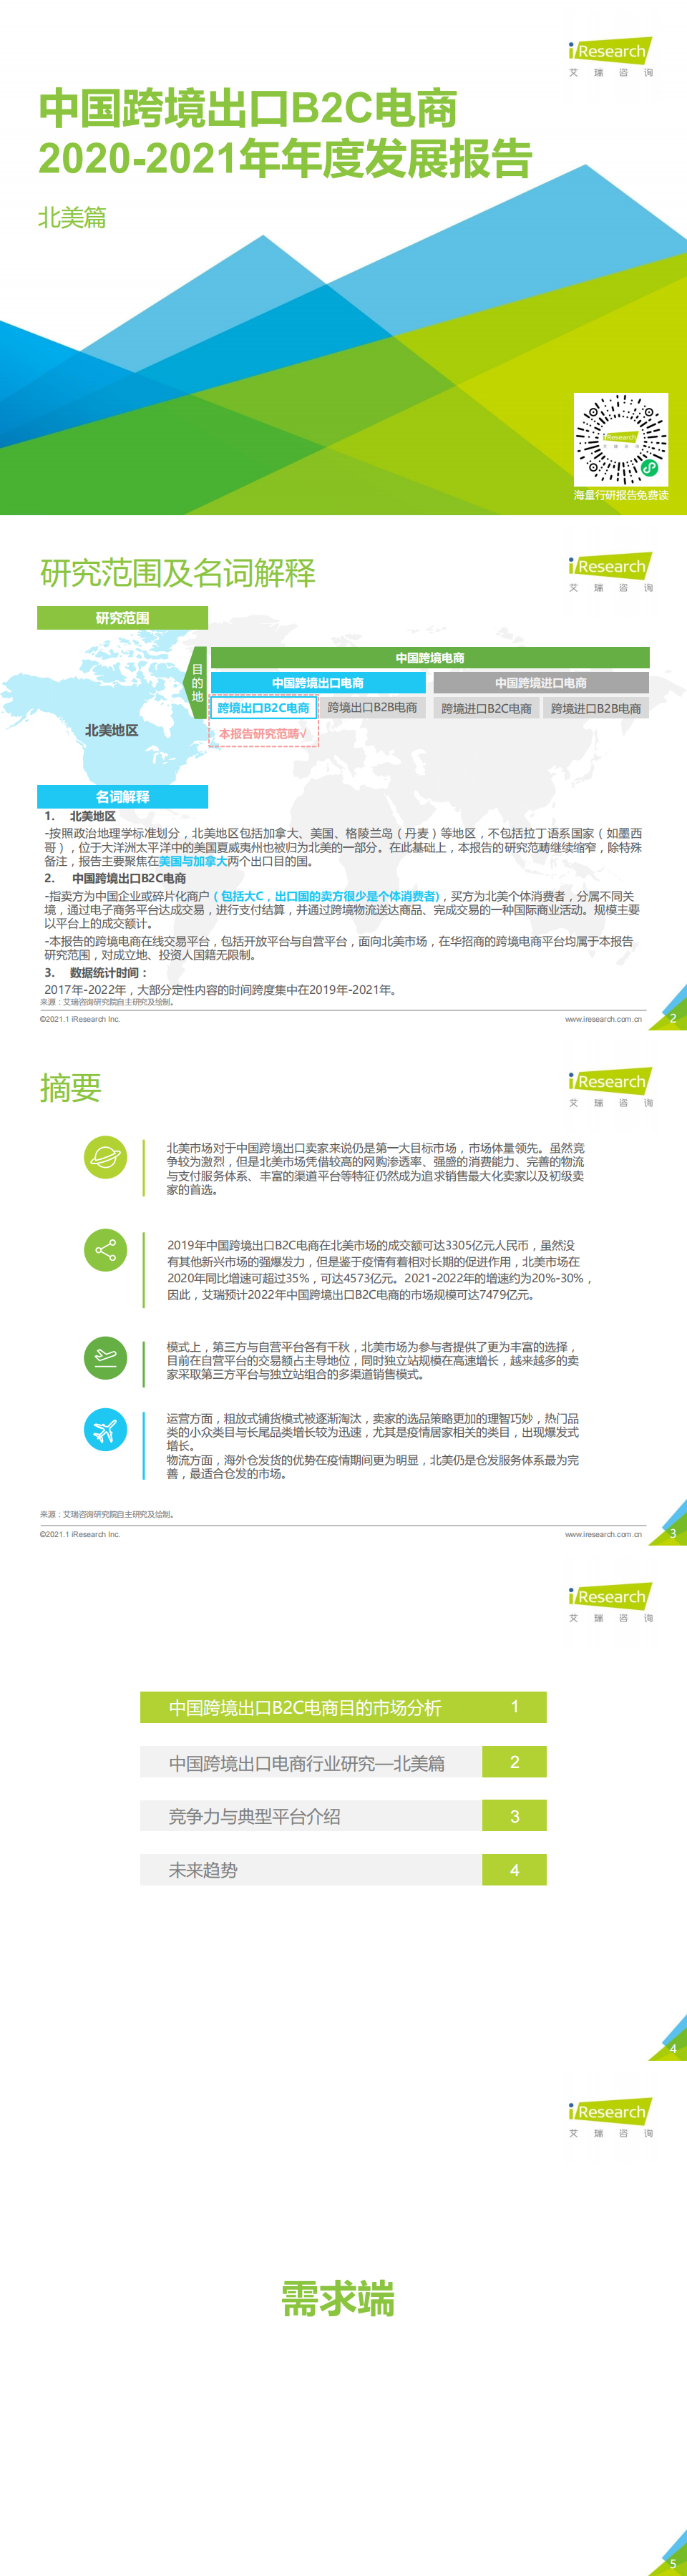 艾瑞咨询：2020-2021年中国跨境出口B2C电商年度发展报告_0.png